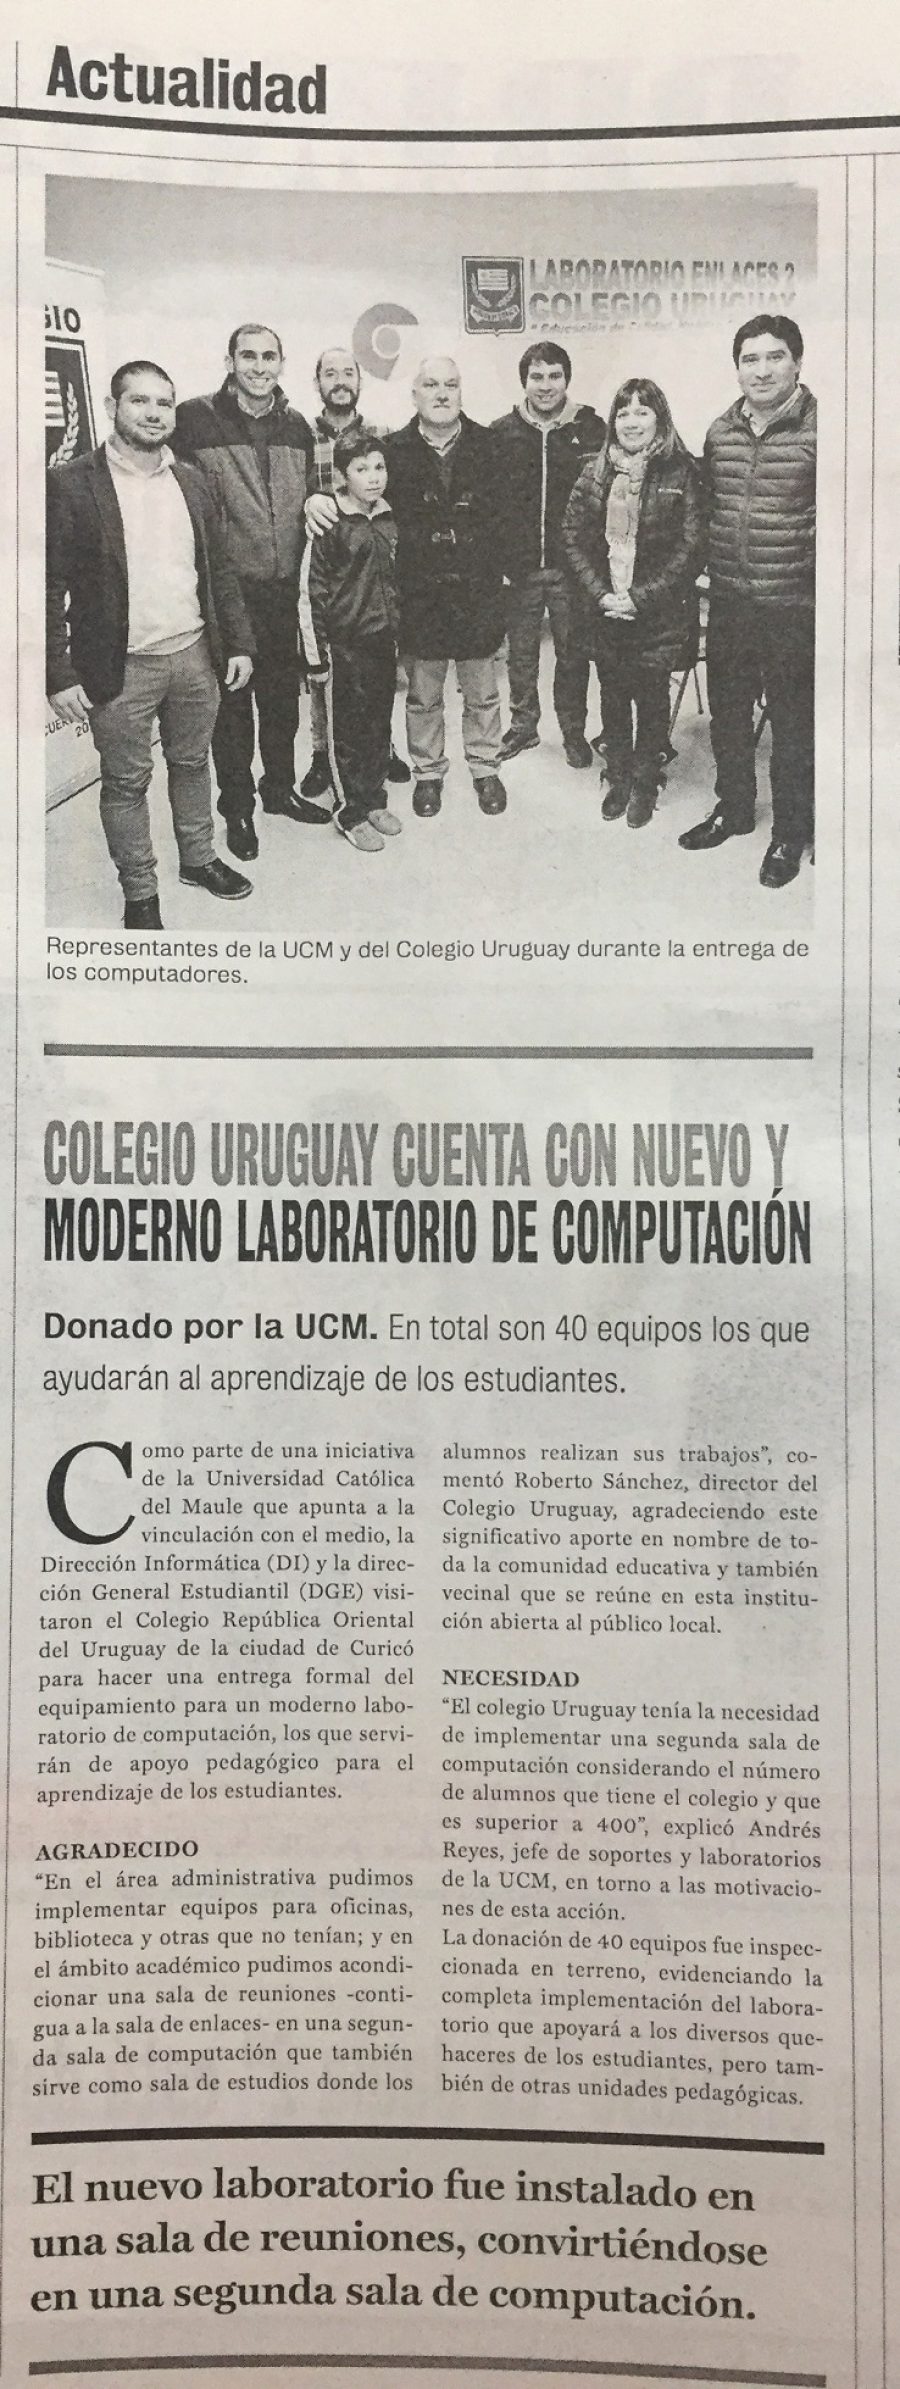 25 de julio en Diario La Prensa: “Colegio Uruguay cuenta con nuevo y moderno laboratorio de computación”